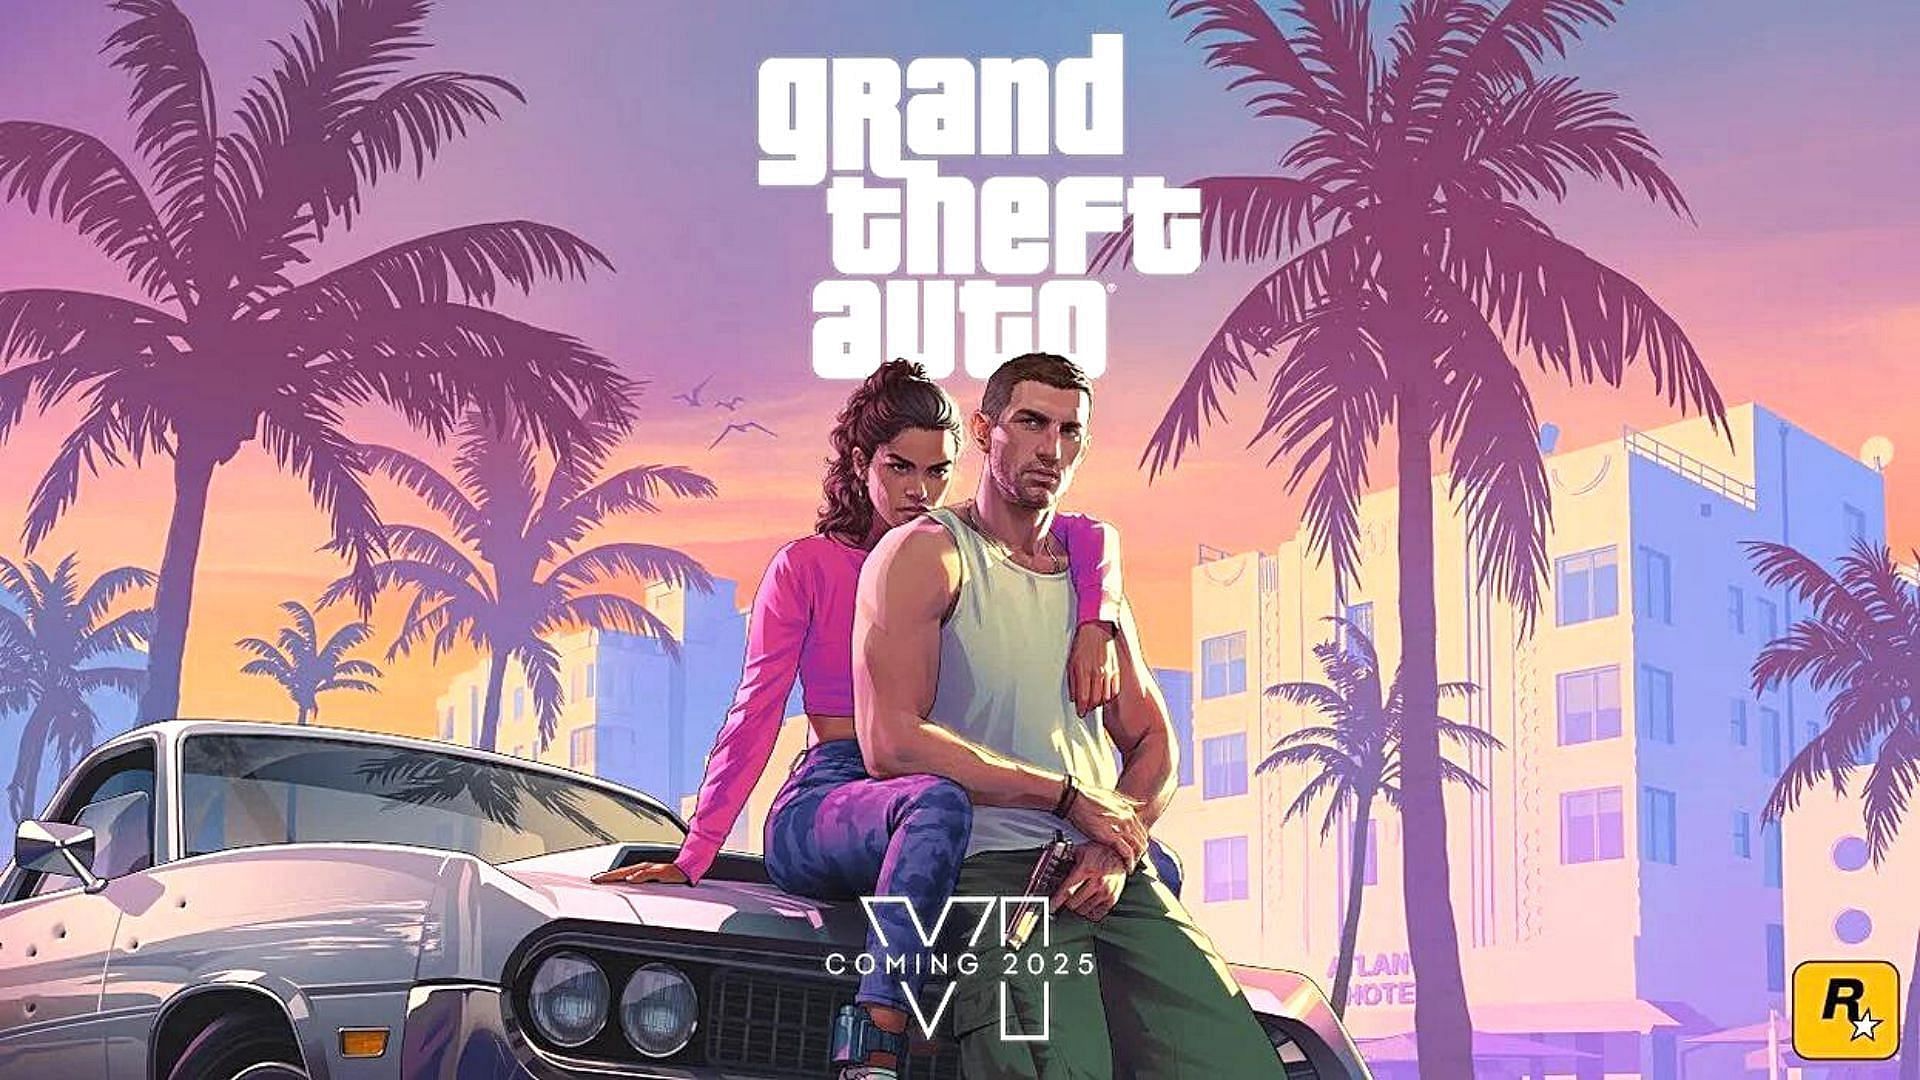 Official Grand Theft Auto 6 artwork (Image via Rockstar Games)